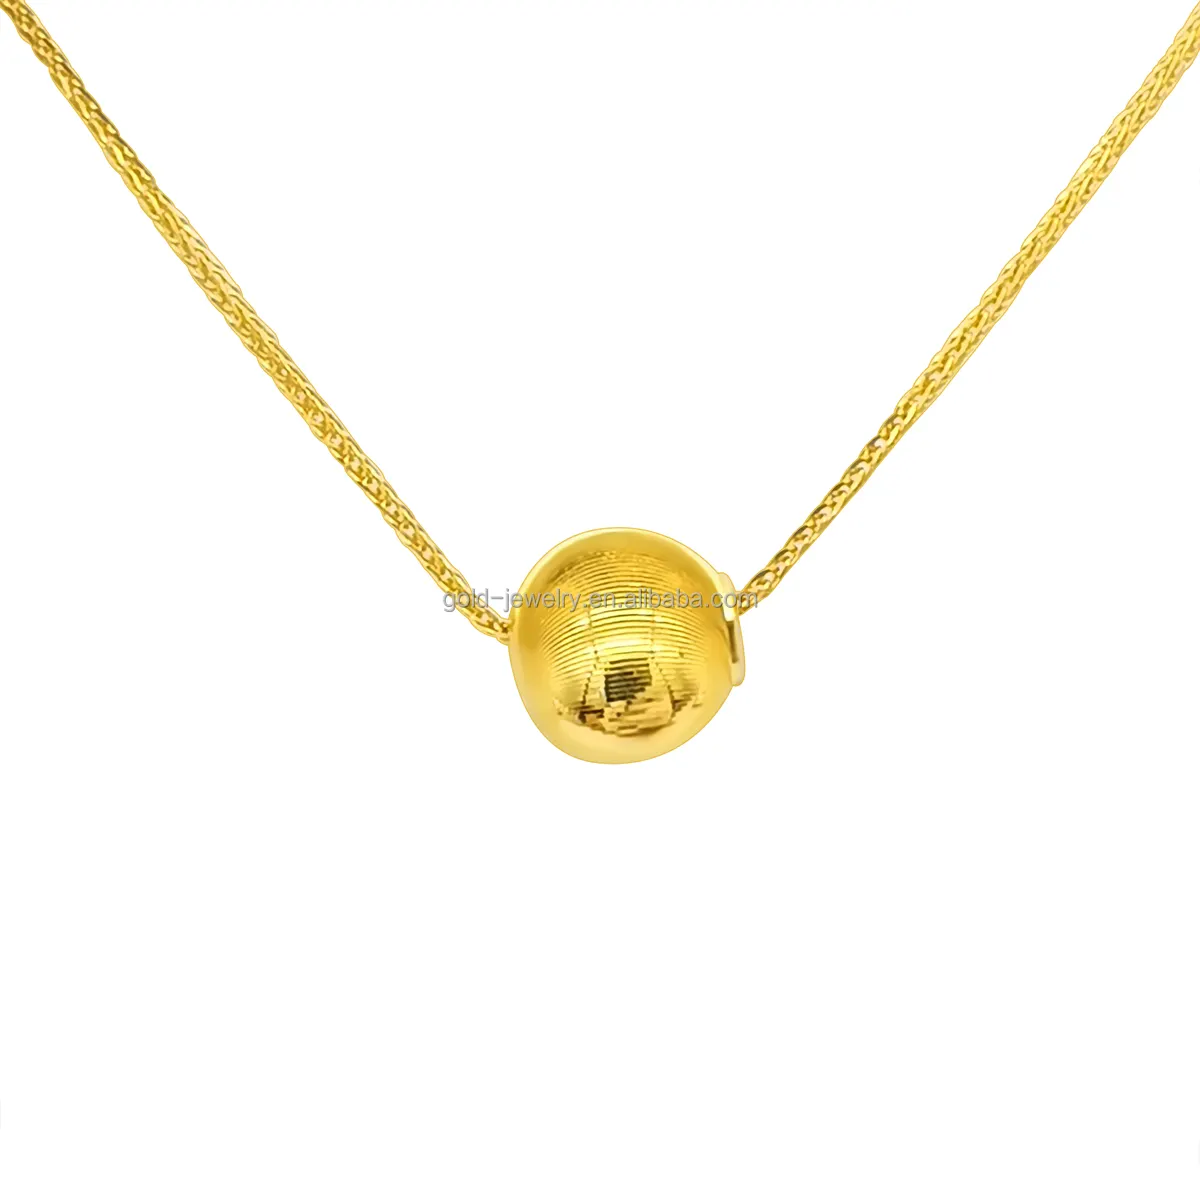 Colar pingente de ouro com moinho de bola, colar dourado com pingente de ouro real, joia feminina de 18k